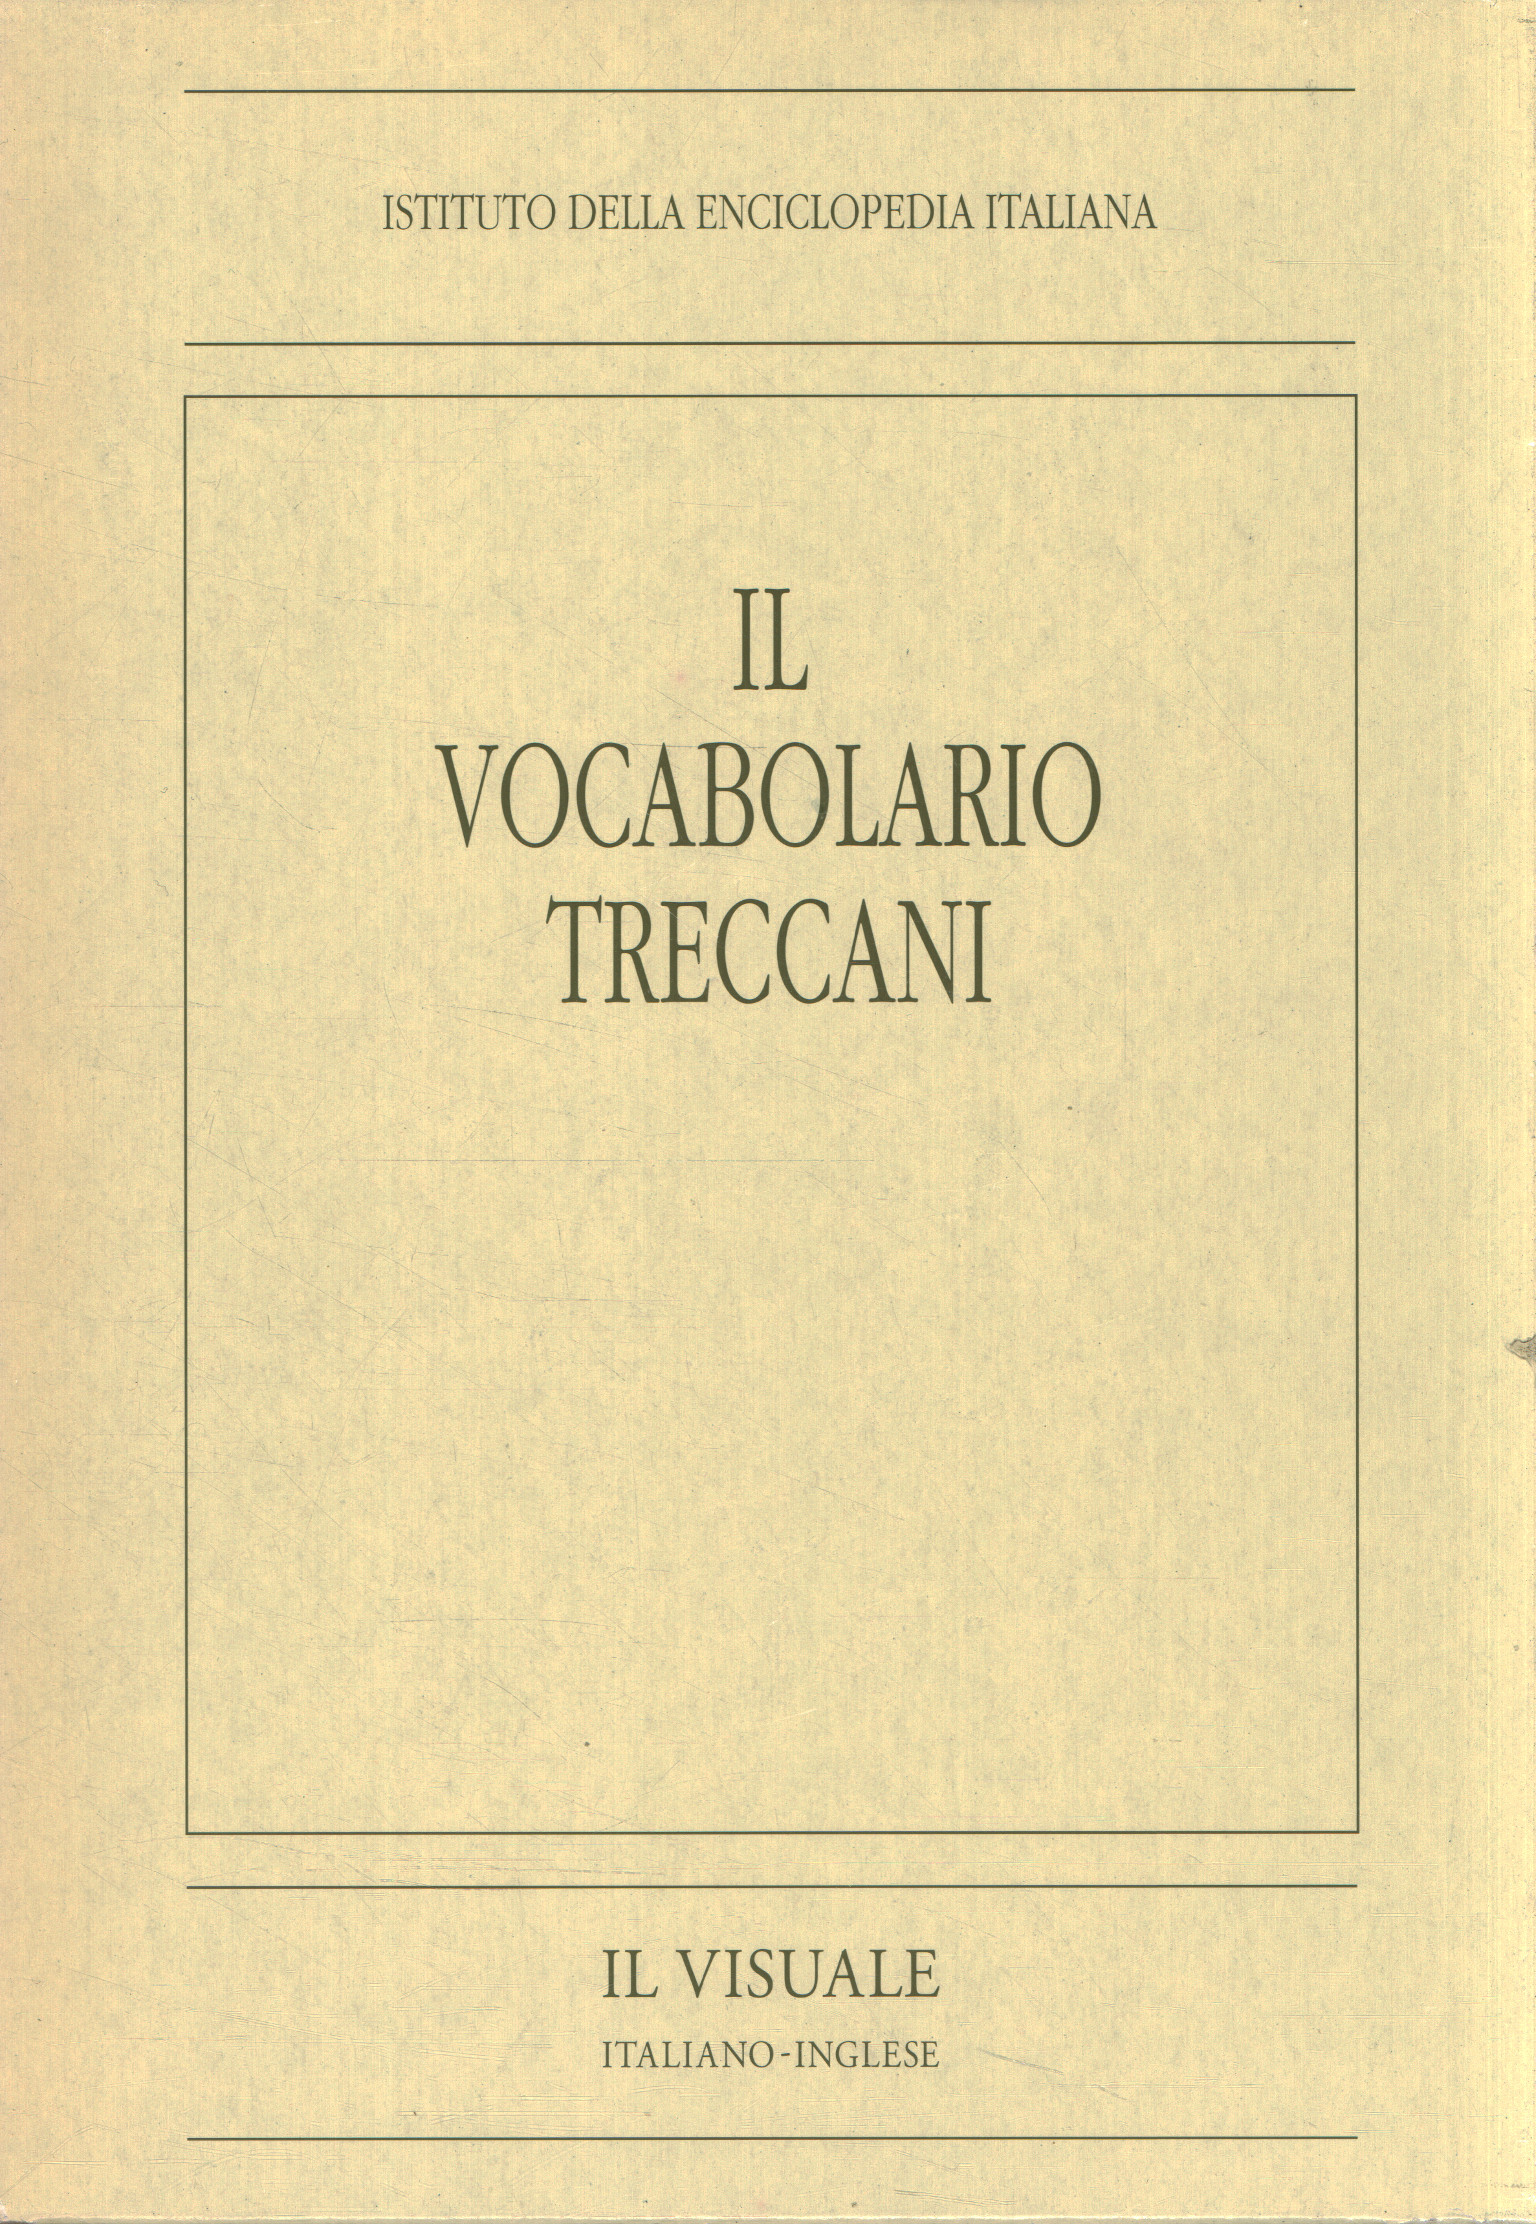 Das Treccani-Vokabular. Die italienische Sicht